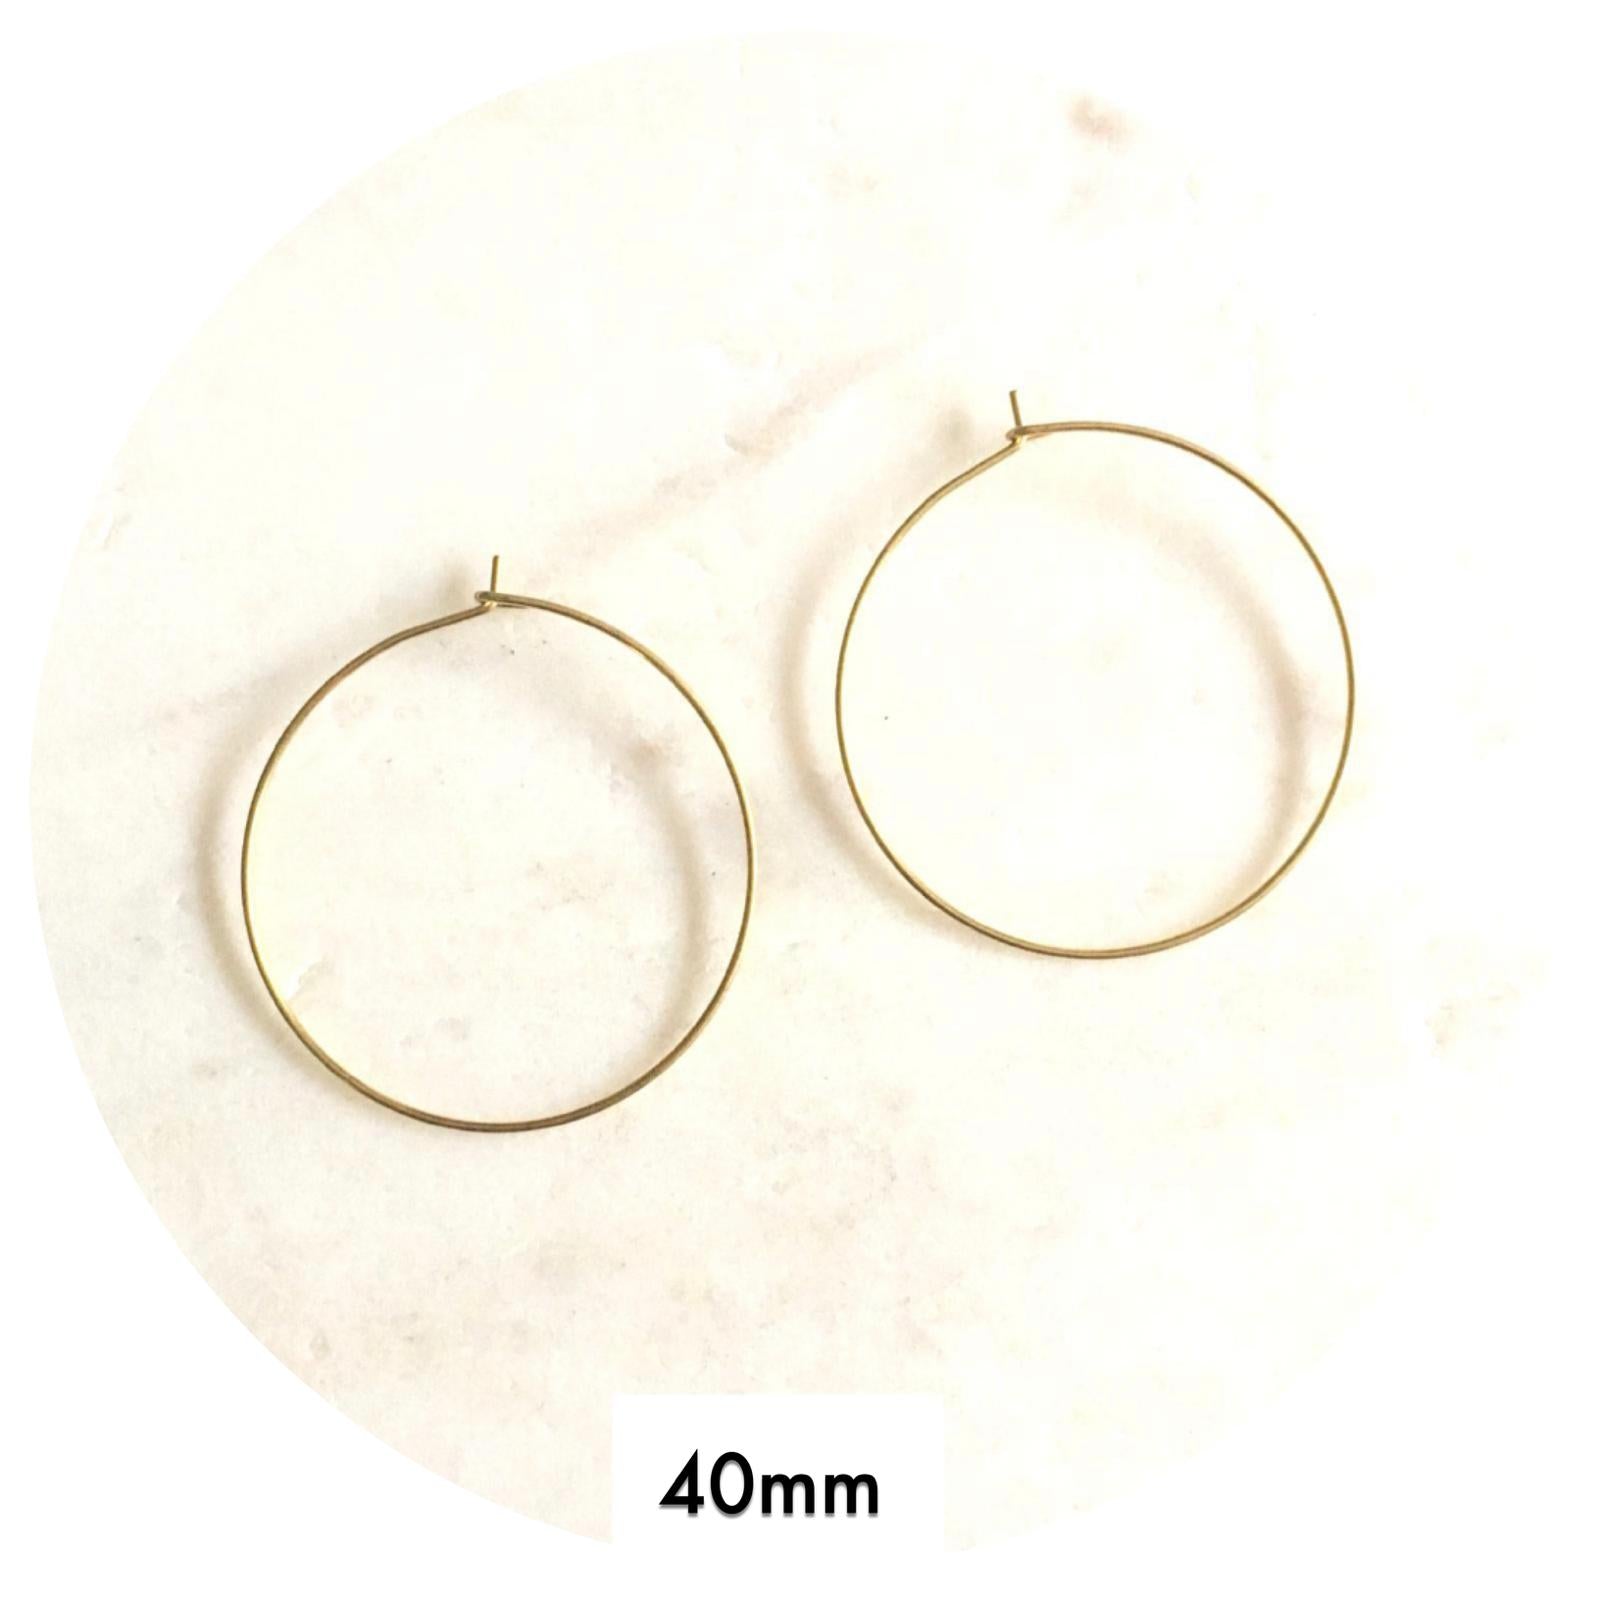 40mm Raw Brass Earring Wire Hoops - 2 pcs - E182